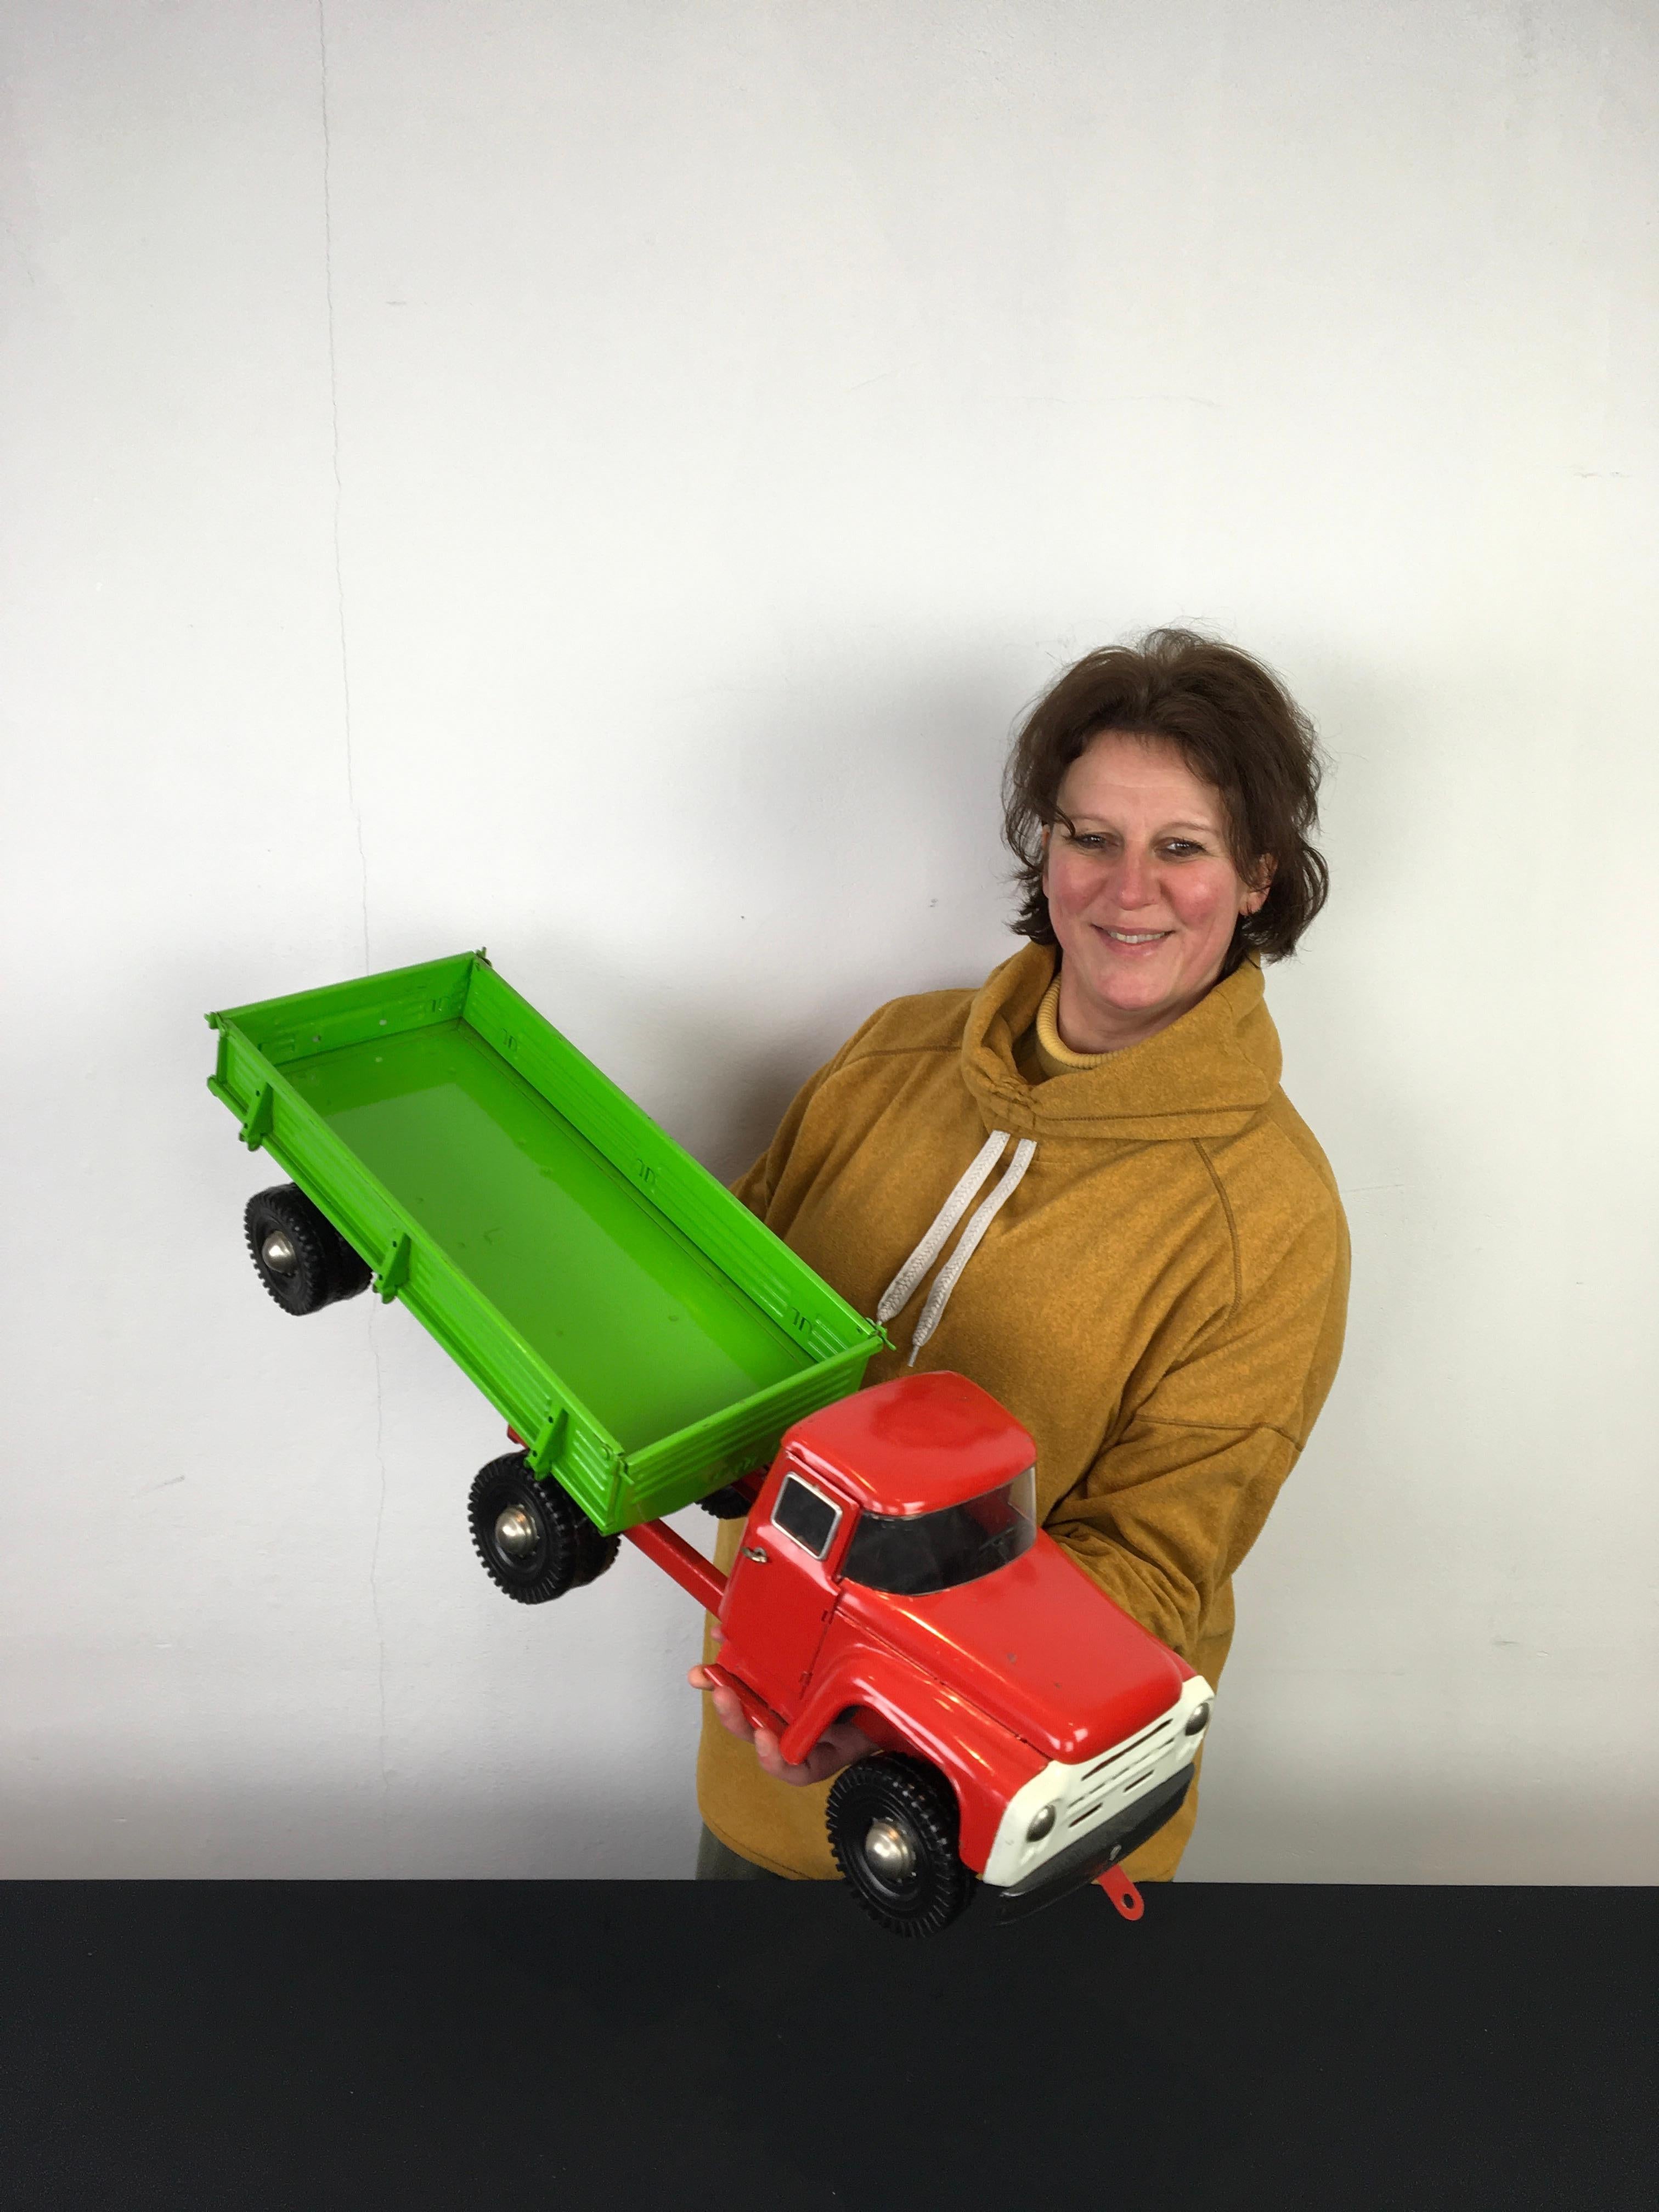 Großes Zil-Sattelschlepper-Spielzeug. 
Ein großer Metall-Lastwagen mit einer roten Kabine und einem leuchtend grünen Anhänger. Die Farbe und Bemalung ist noch original. Hergestellt in Russland in den 1980er Jahren, im Jahr 1983, das auf dem